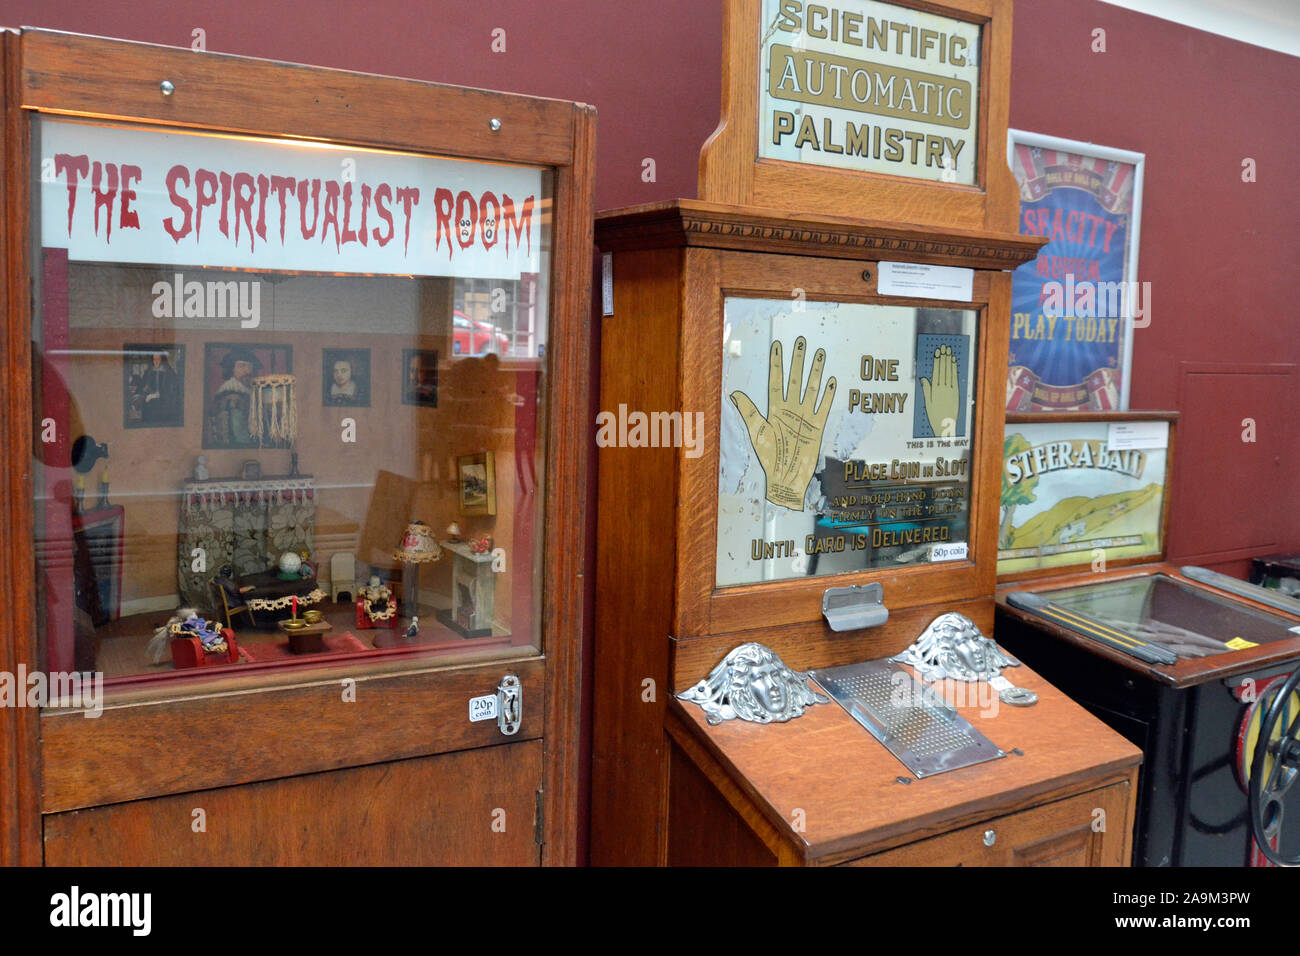 The Spiritualist Room and palmisty Game, parmi les machines à sous victoriennes au SeaCity Museum, Southampton, Hampshire, Royaume-Uni Banque D'Images